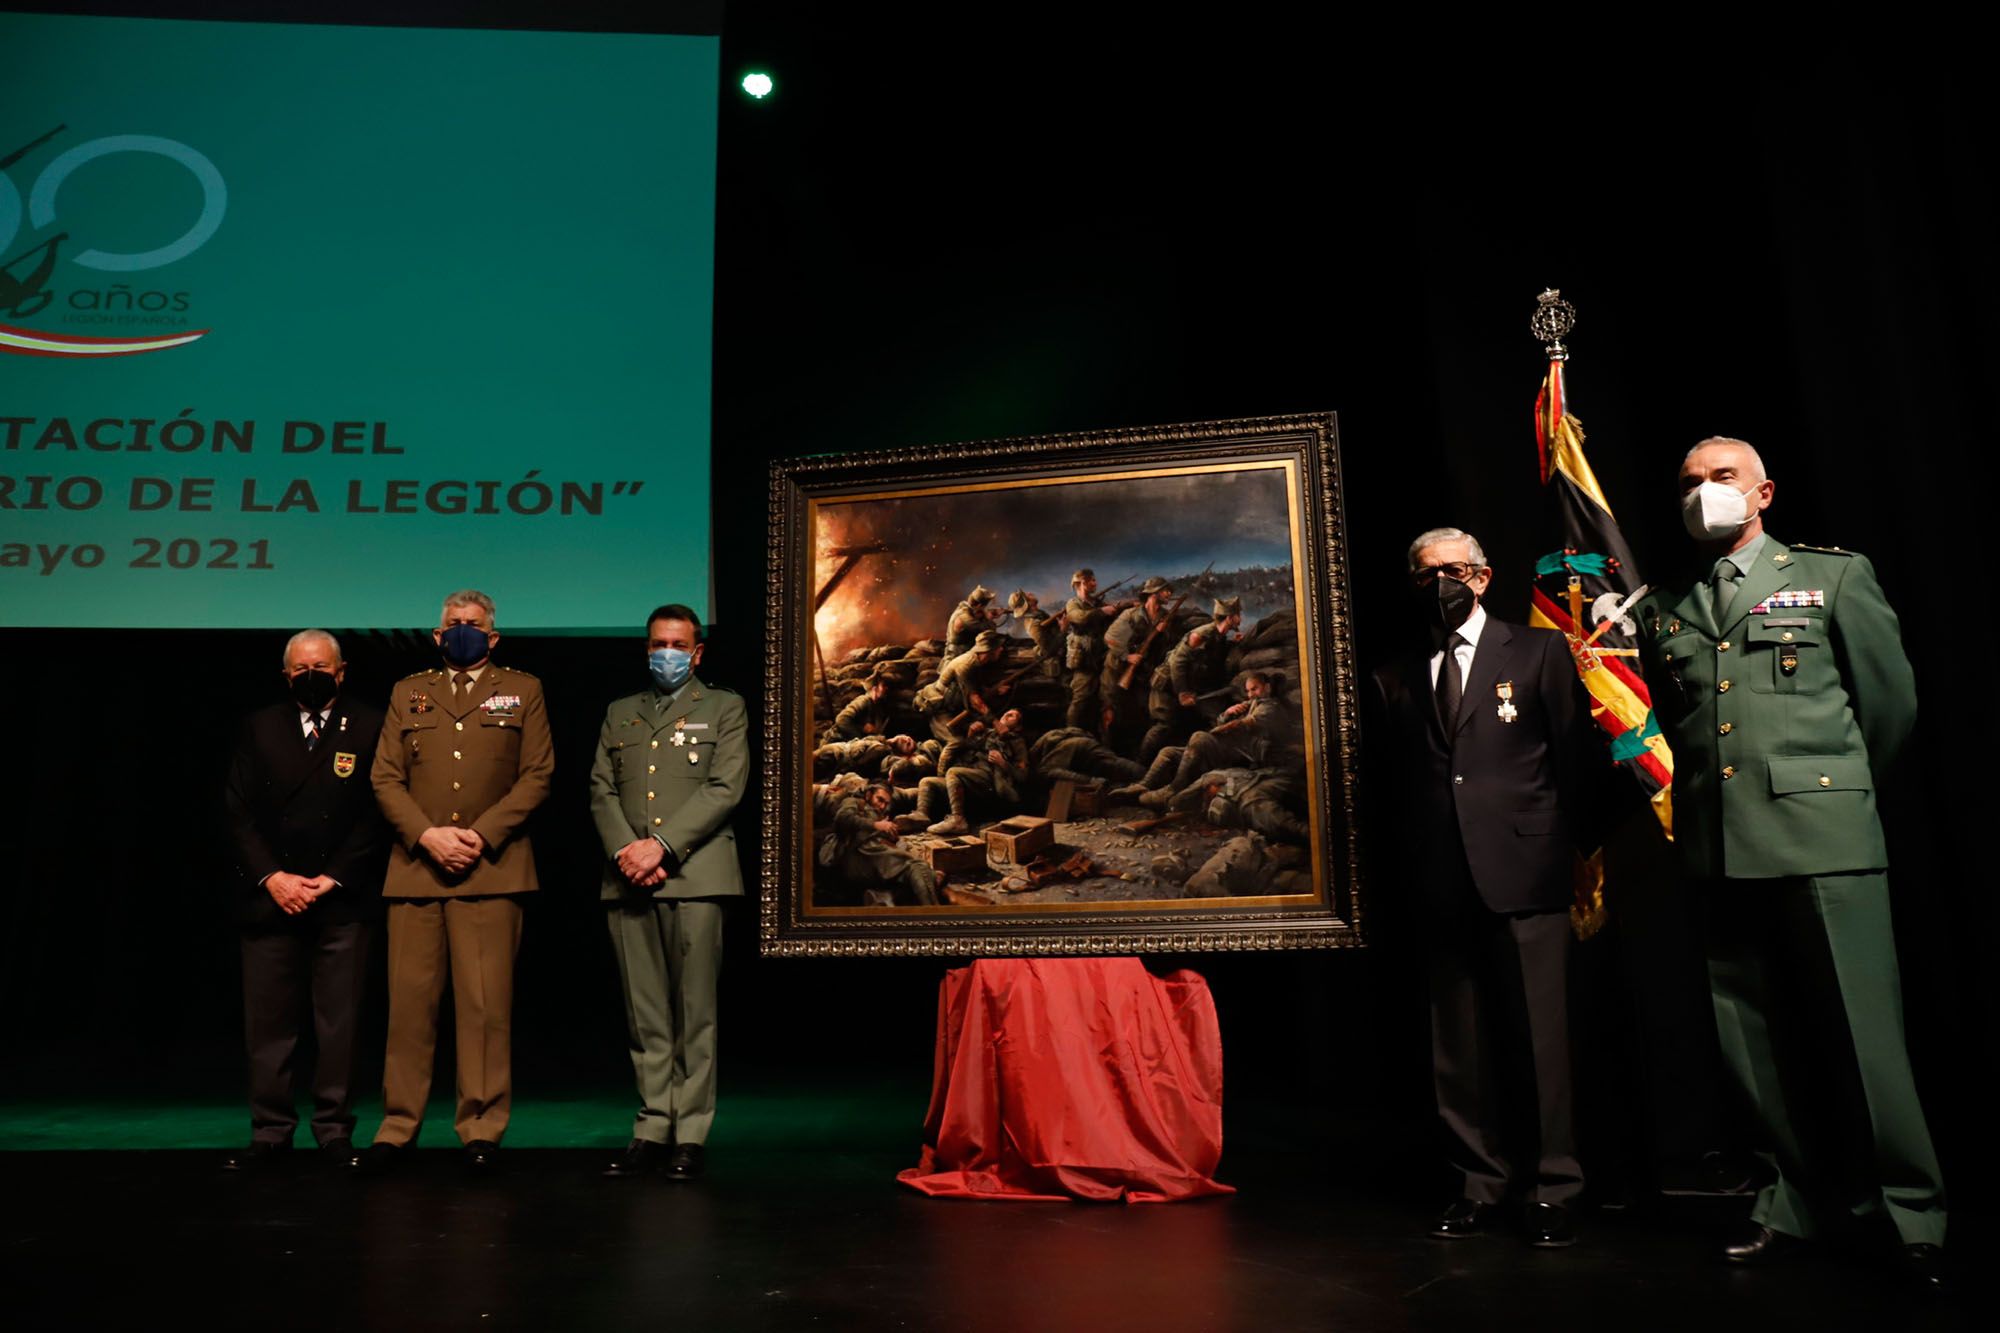 Acto de presentación del cuadro del centenario de la Legión